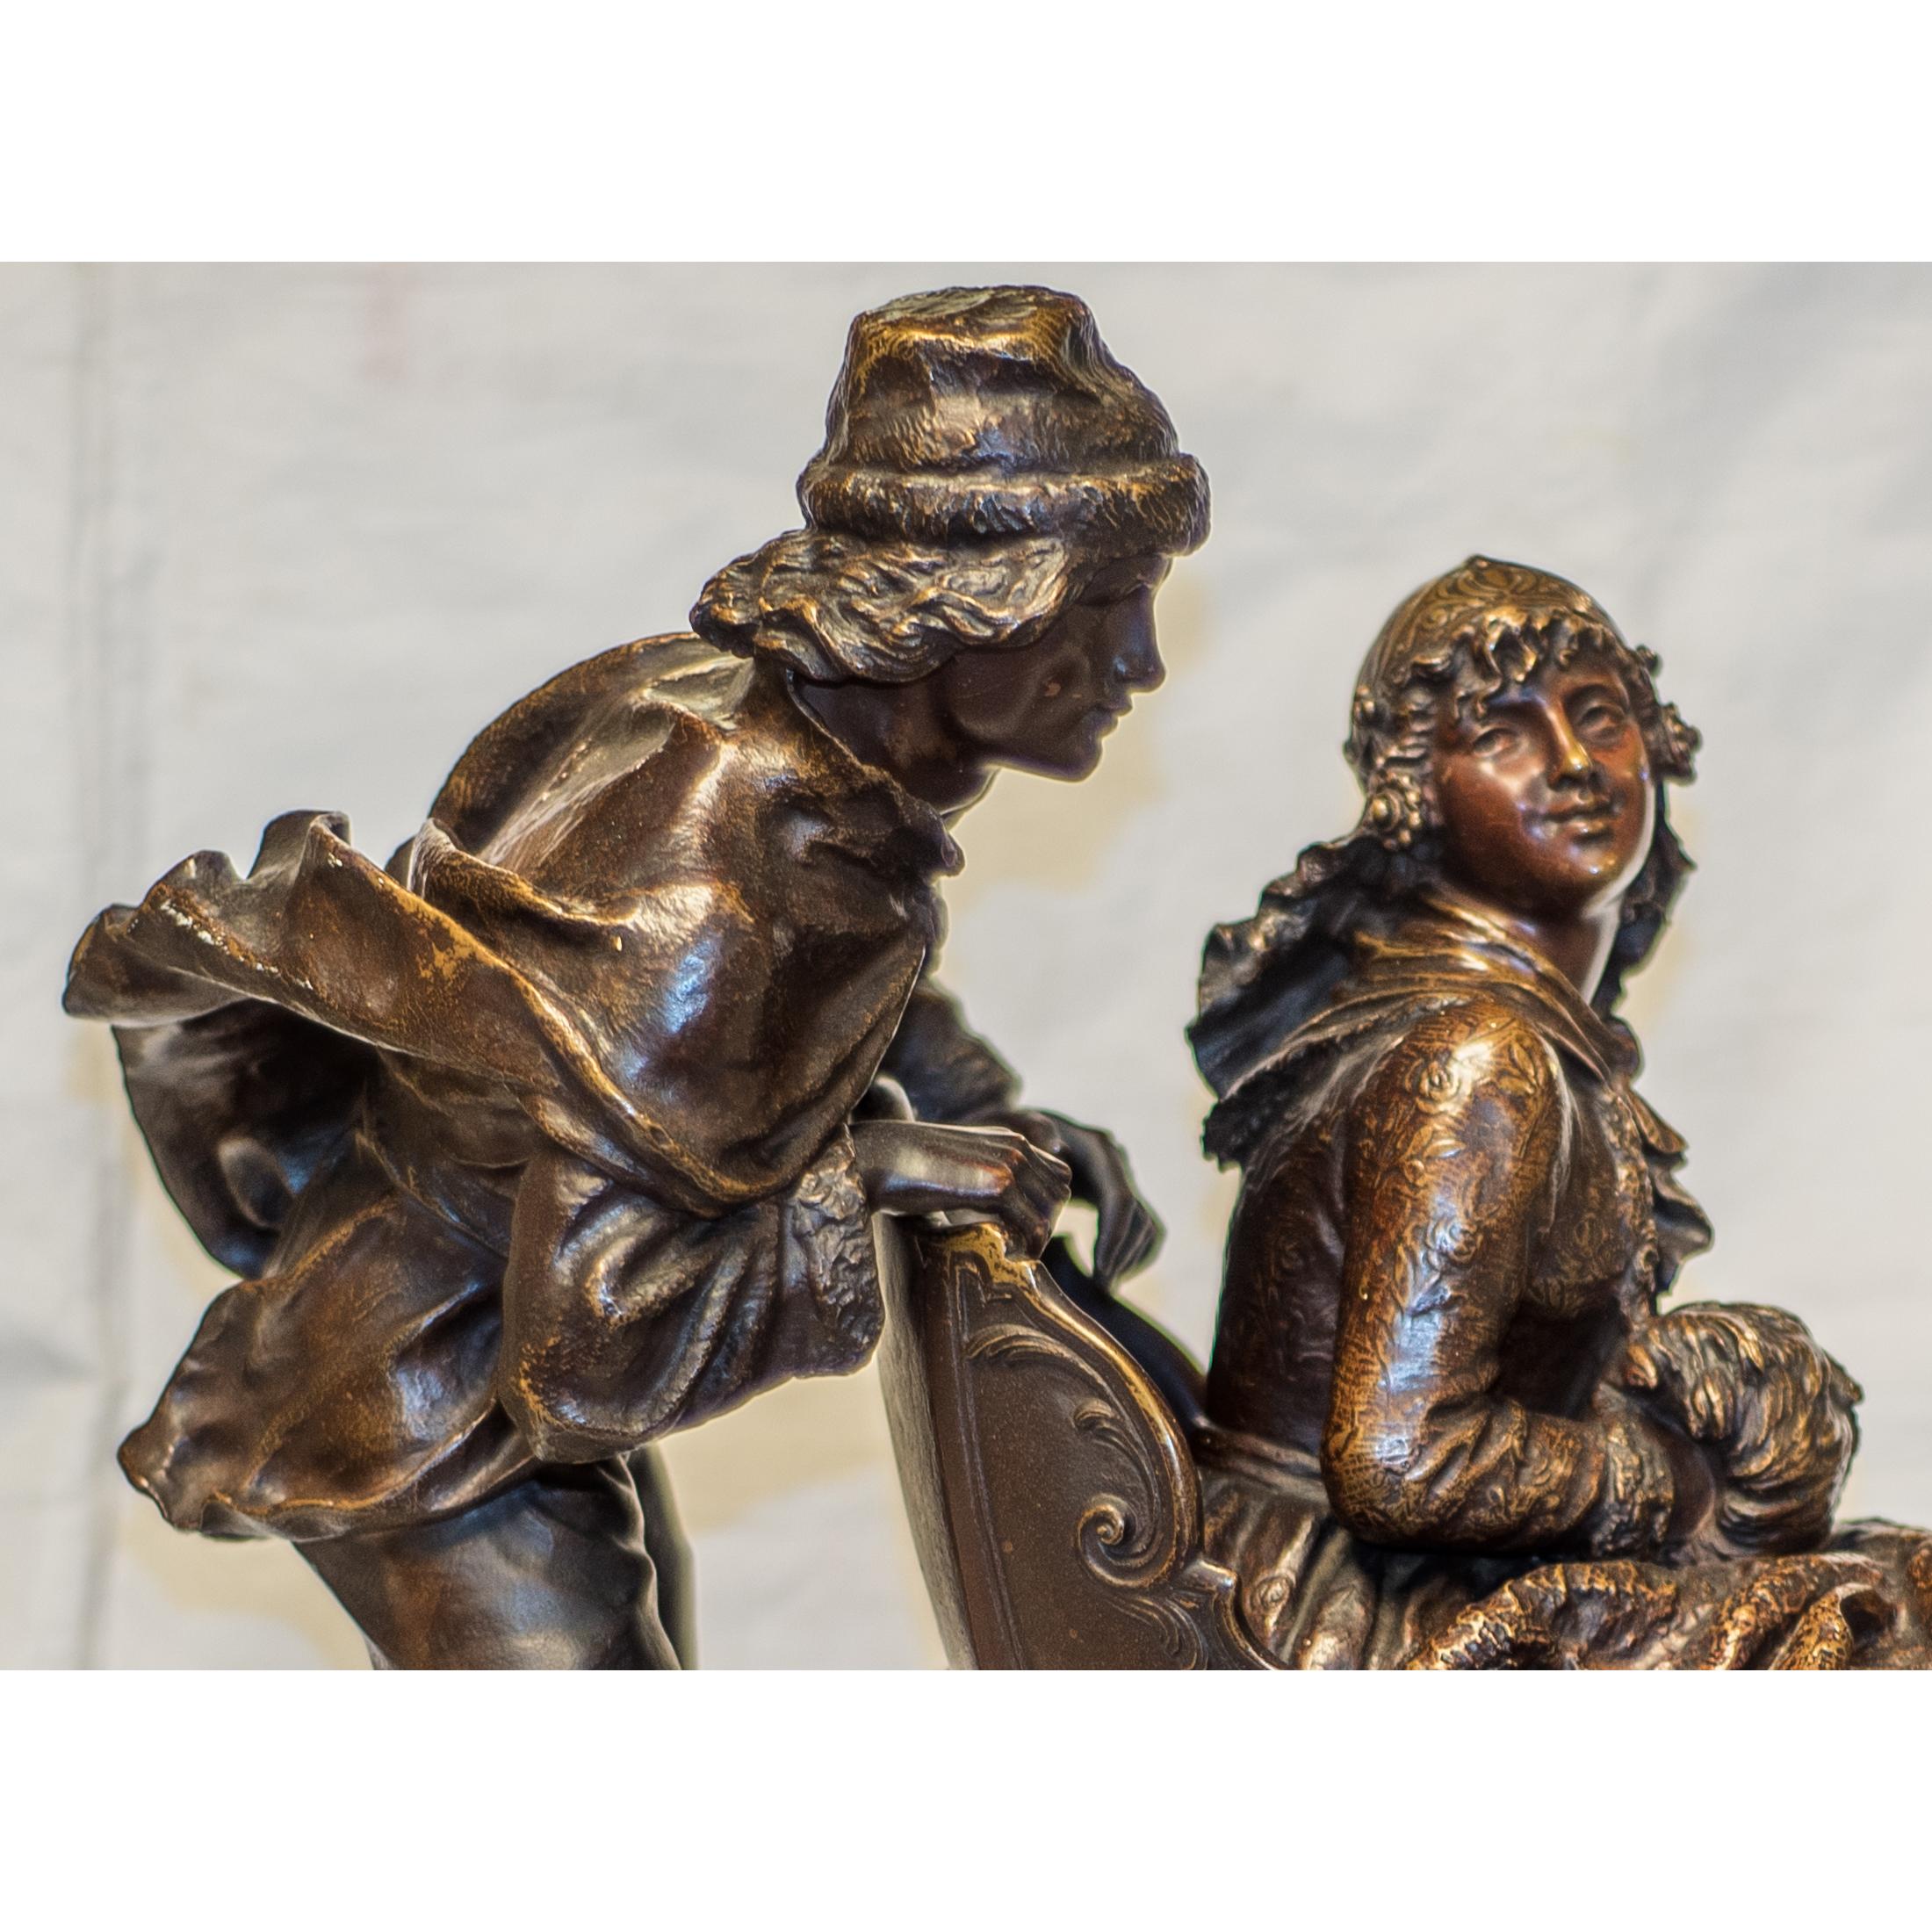 Eine schöne patinierte Bronzeskulptur eines Mannes, der den Schlitten der Frau schiebt, von Charles Ferville-Suan.
Winterszene eines Mannes auf Schlittschuhen, der den Schlitten einer Frau schiebt, auf Onyx- und Holzsockel montiert; signiert im